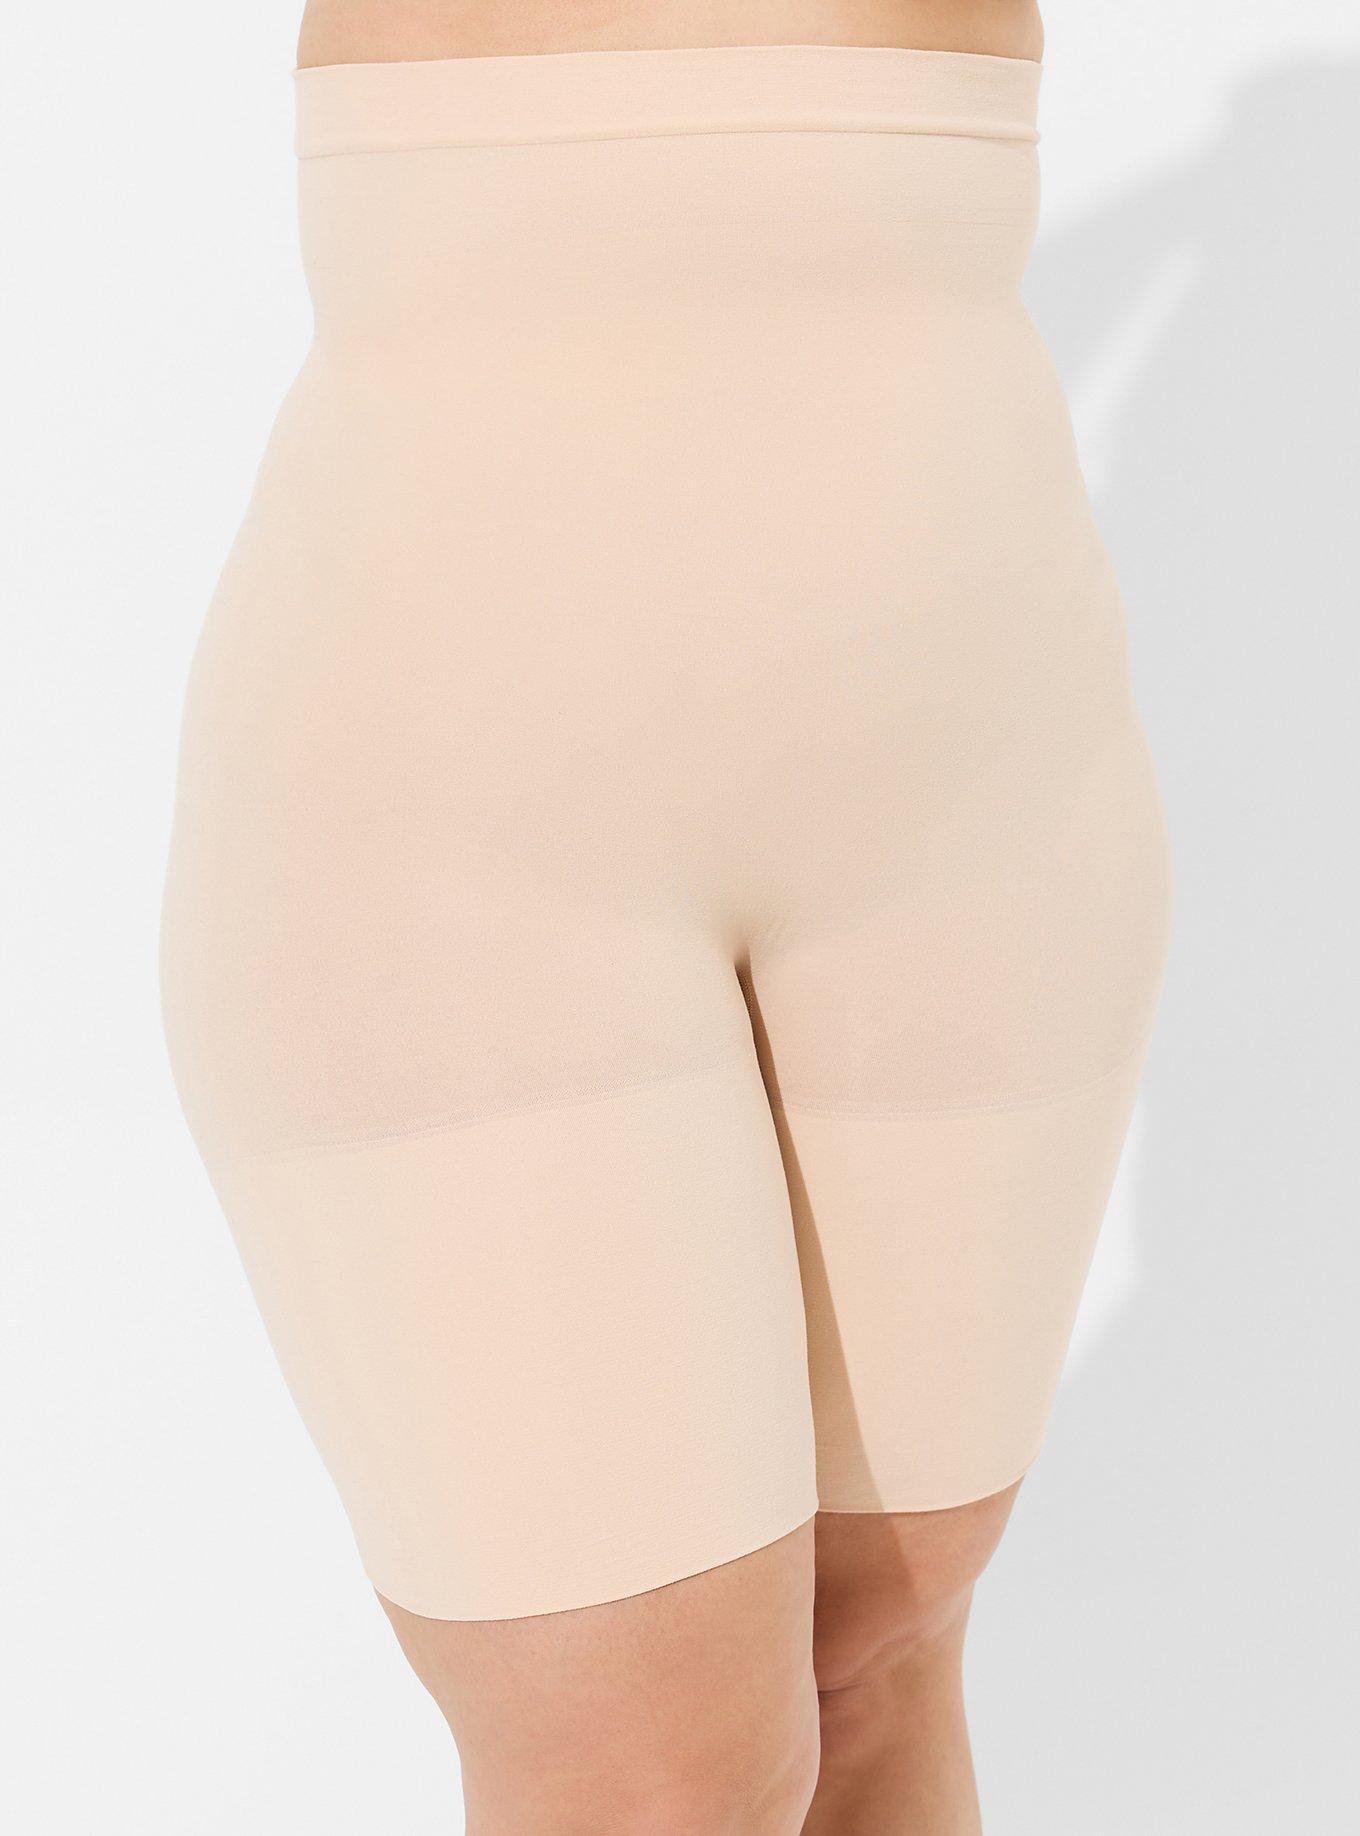 Buy Spanx Women's Higher Power Thigh Slimmer, Beige Soft Nude 000, 12 Size:  Medium at